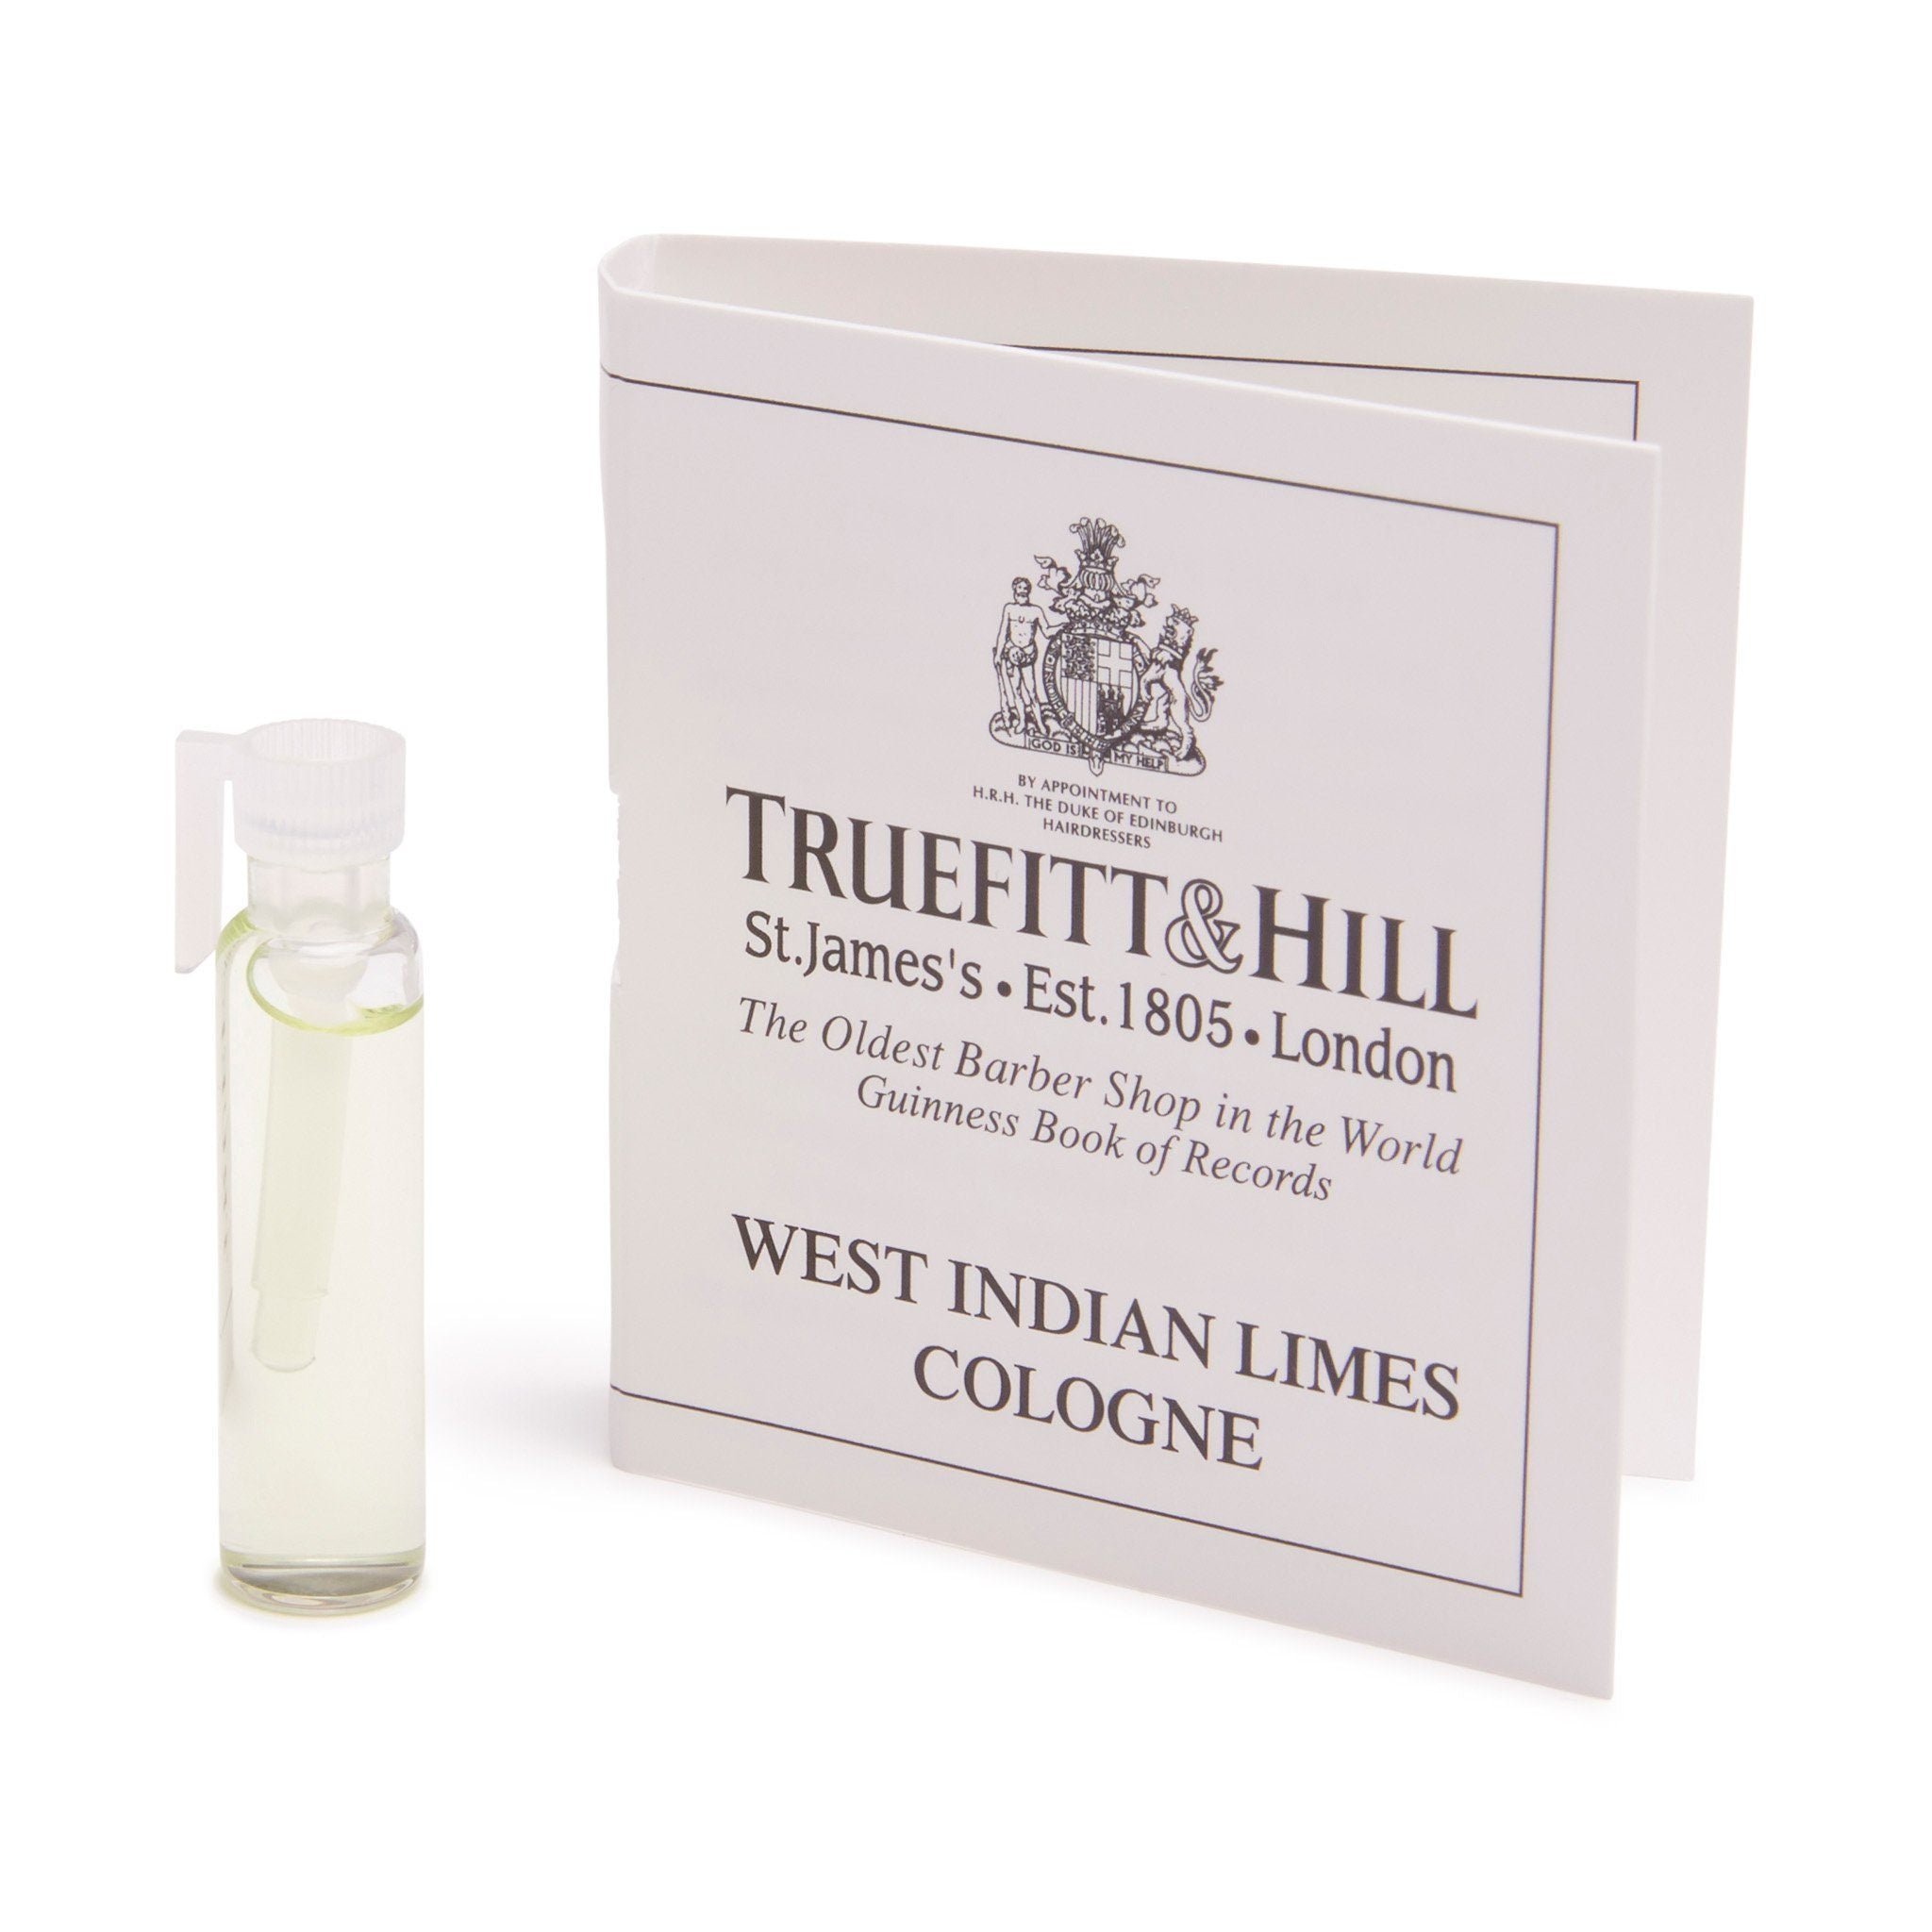 Truefitt & Hill Cologne vareprøve West Indian Limes